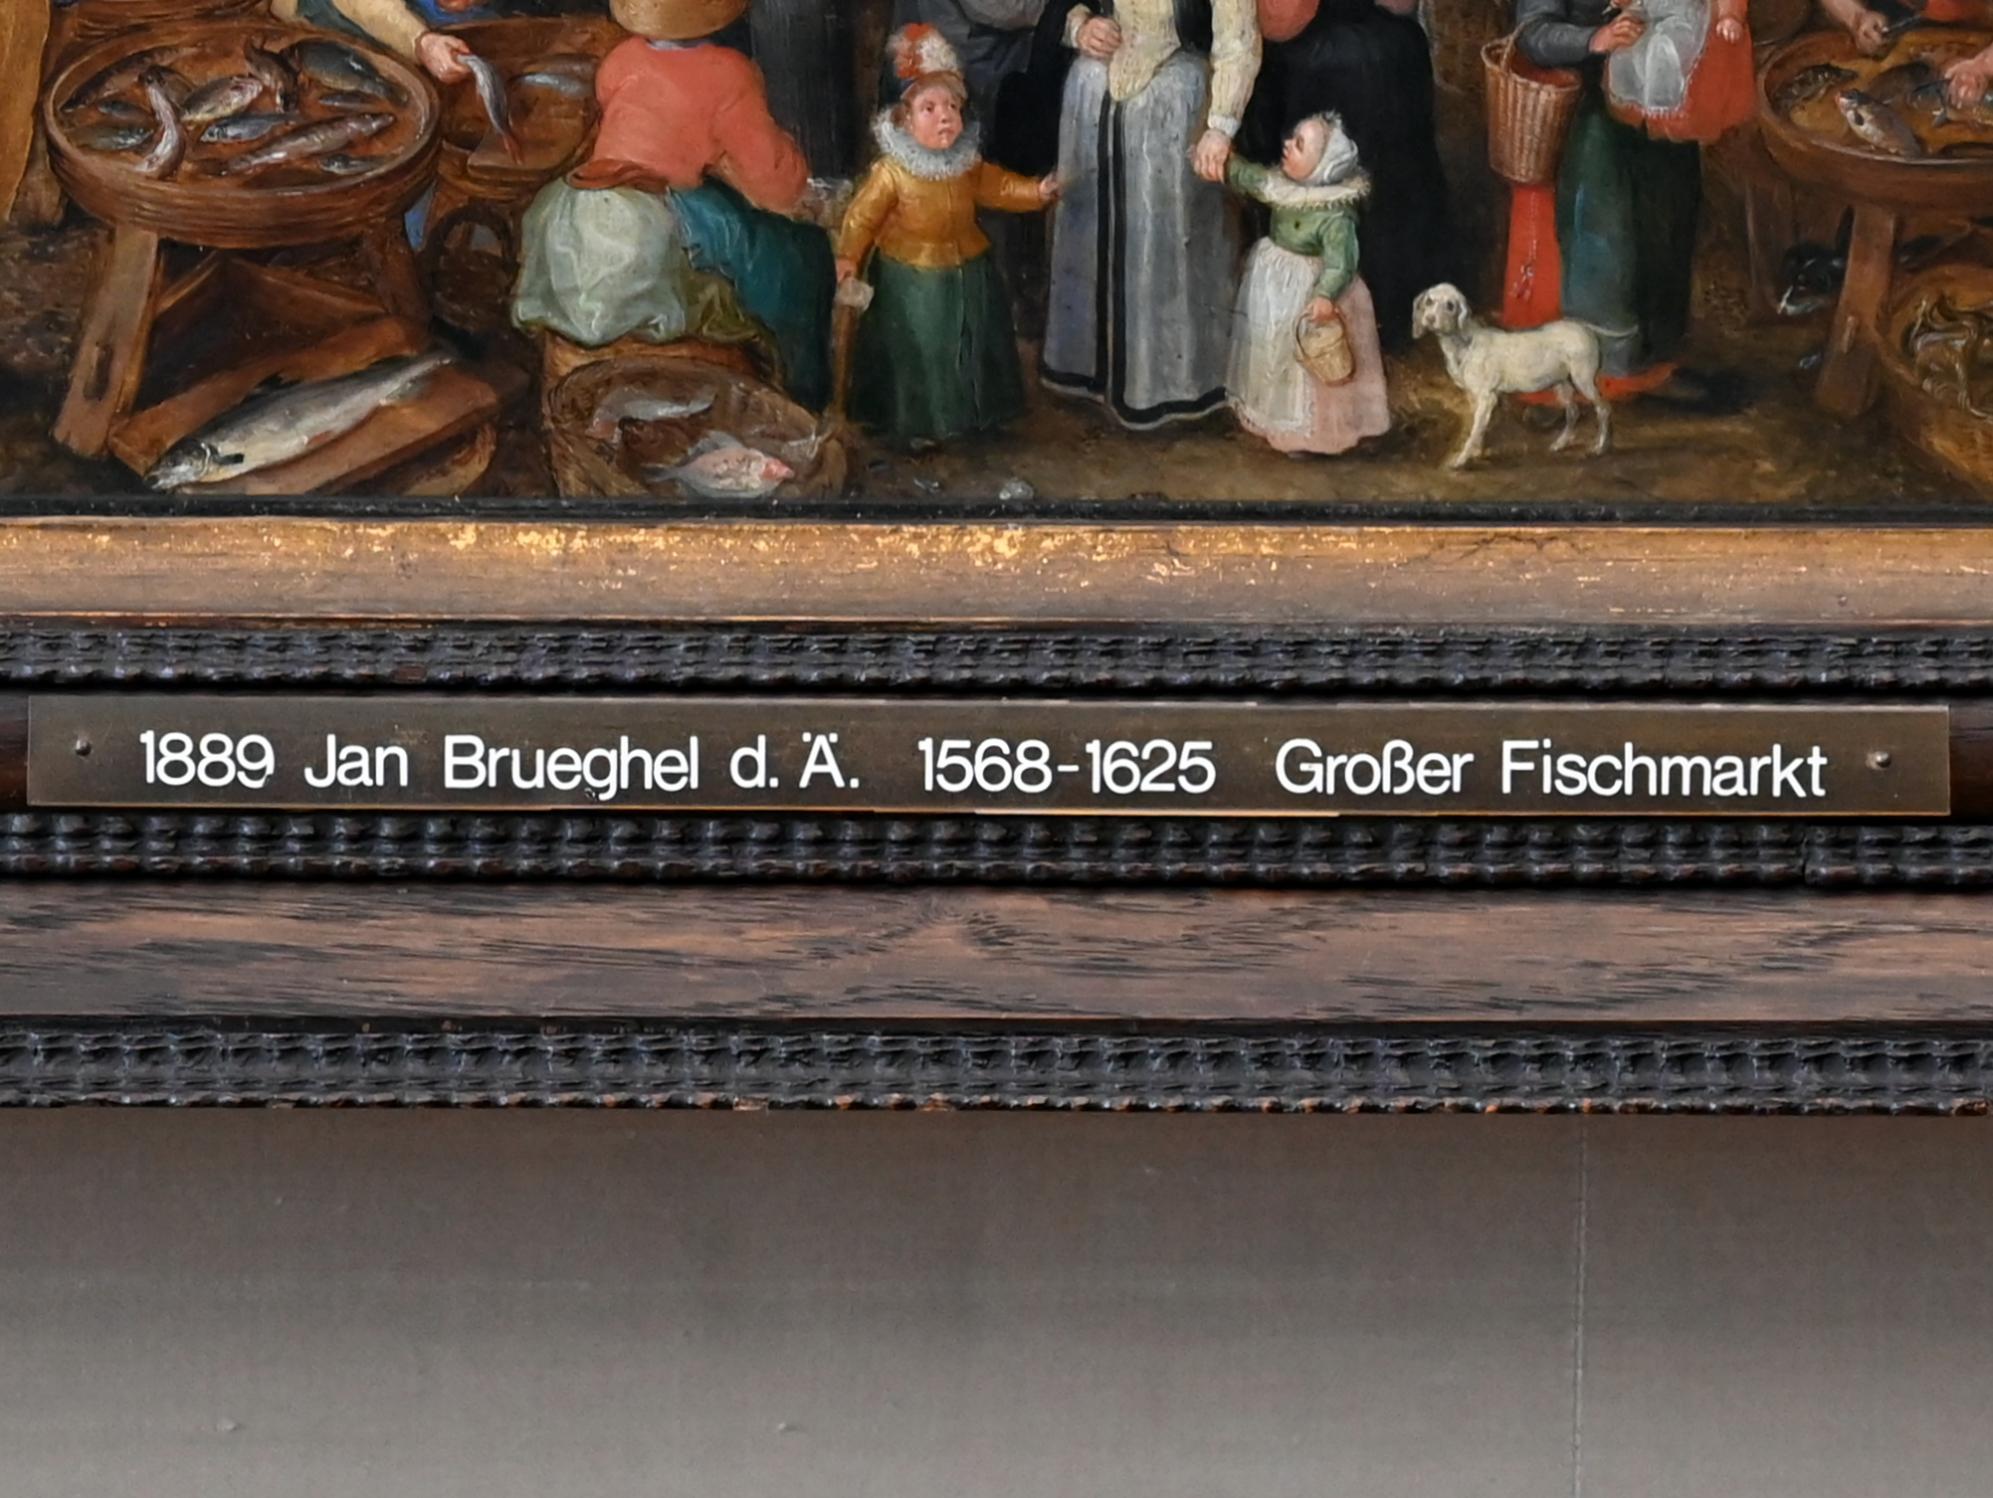 Jan Brueghel der Ältere (Samtbrueghel, Blumenbrueghel) (1593–1621), Großer Fischmarkt, München, Alte Pinakothek, Obergeschoss Kabinett 9, 1603, Bild 2/2